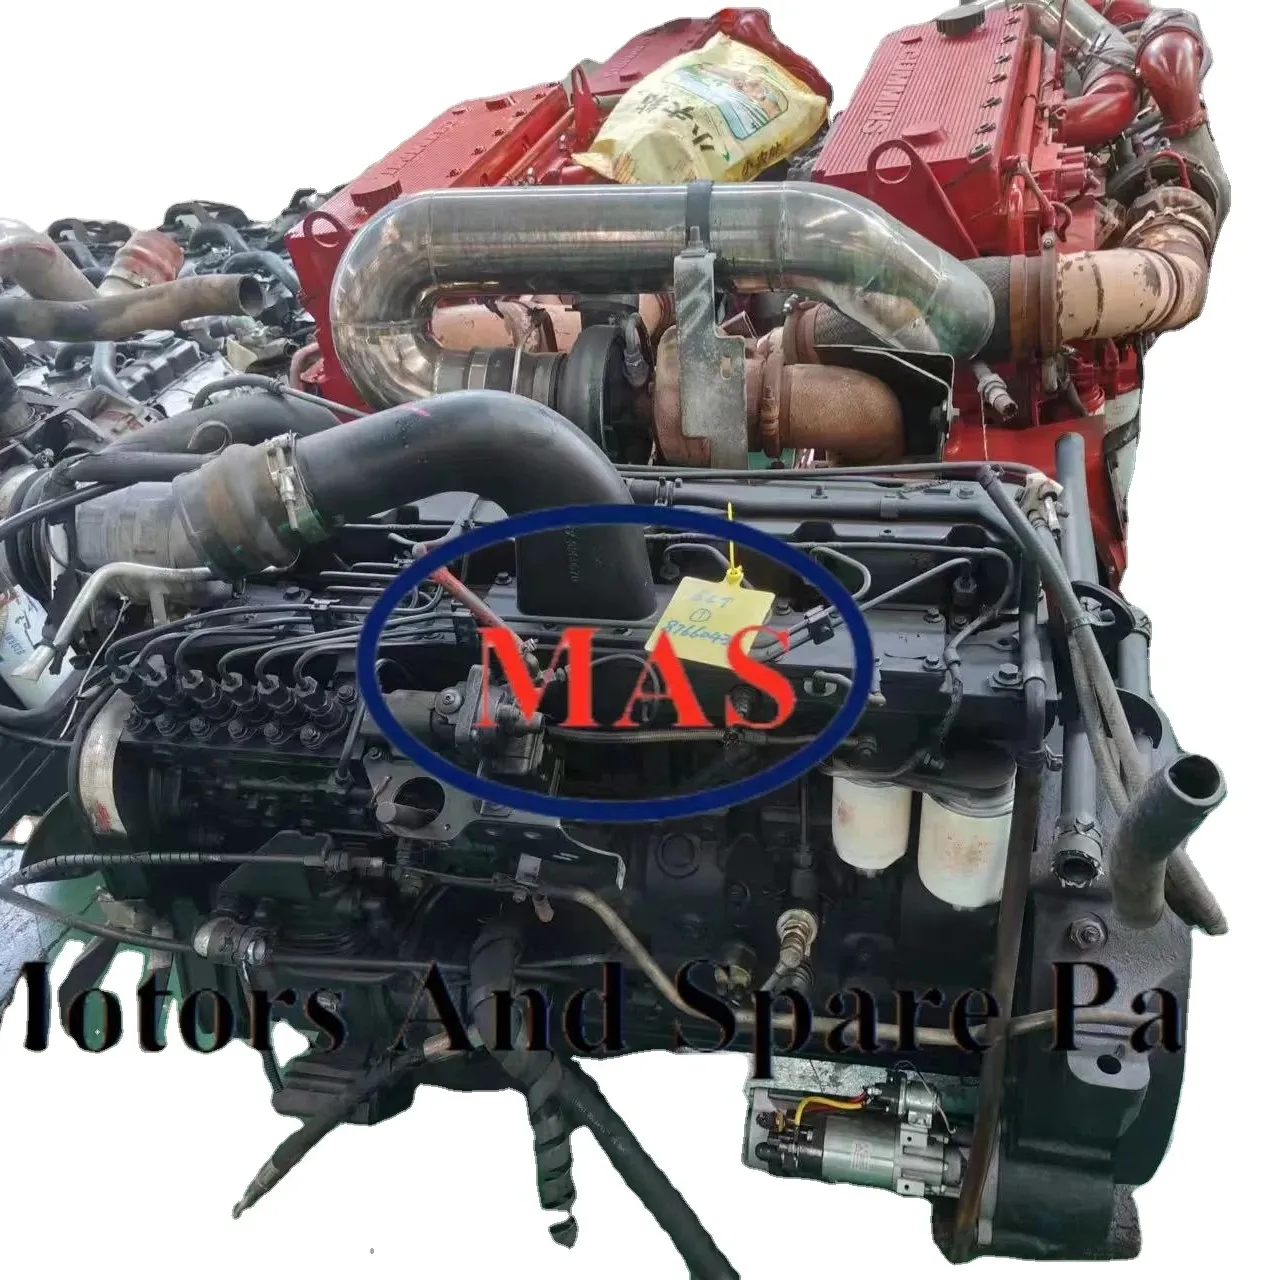 Cummins için yüksek kalite kullanılan motor 6bt motor yakıt pompası 6ct 6l 4bt motor parçaları ve şanzıman volan